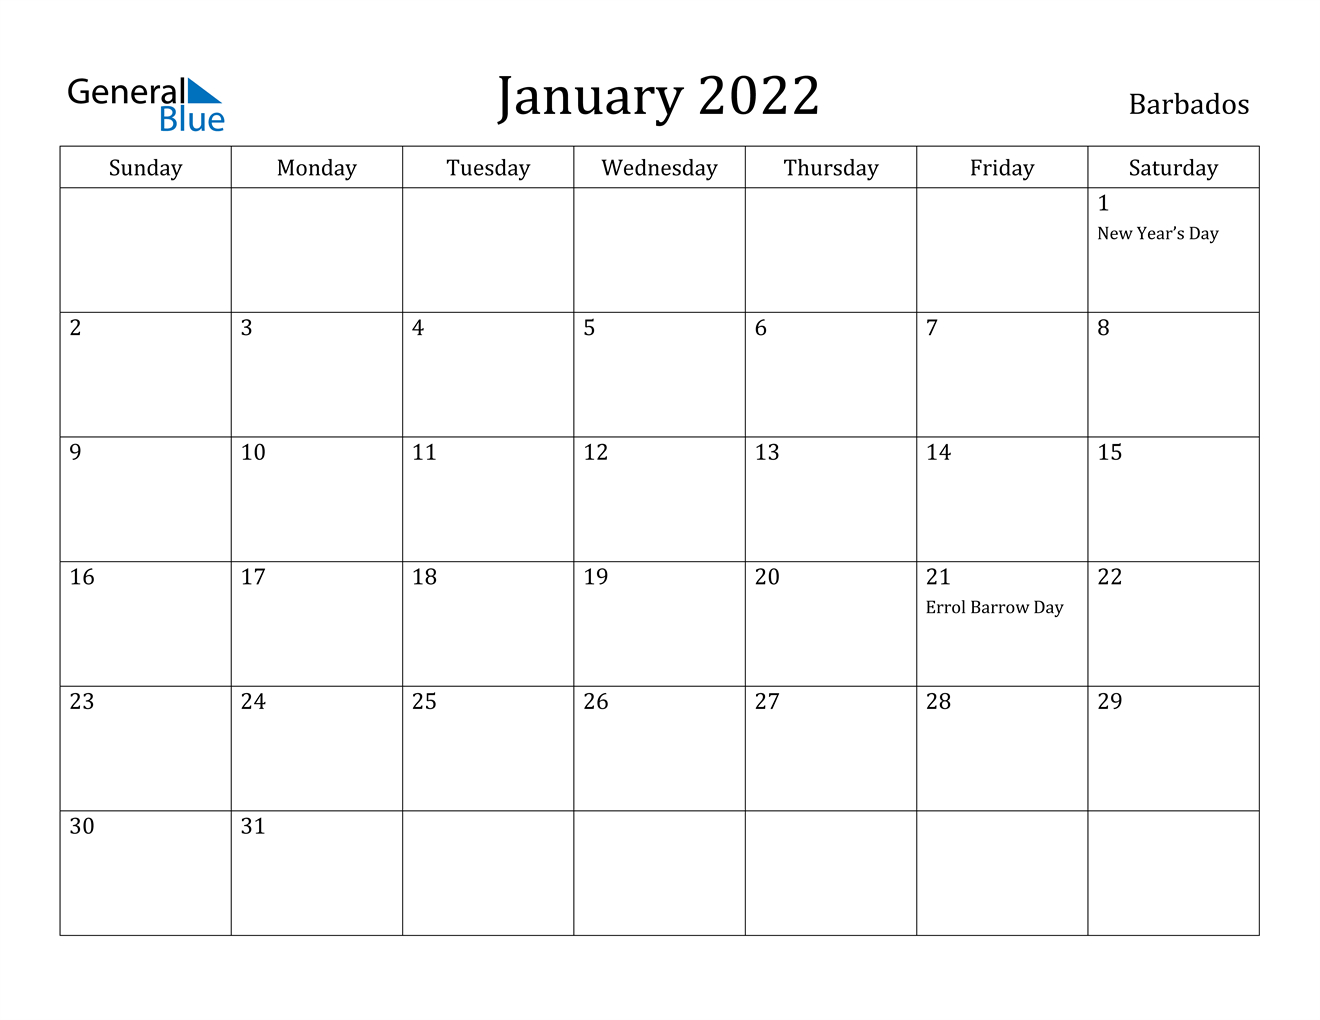 January 2022 Calendar - Barbados